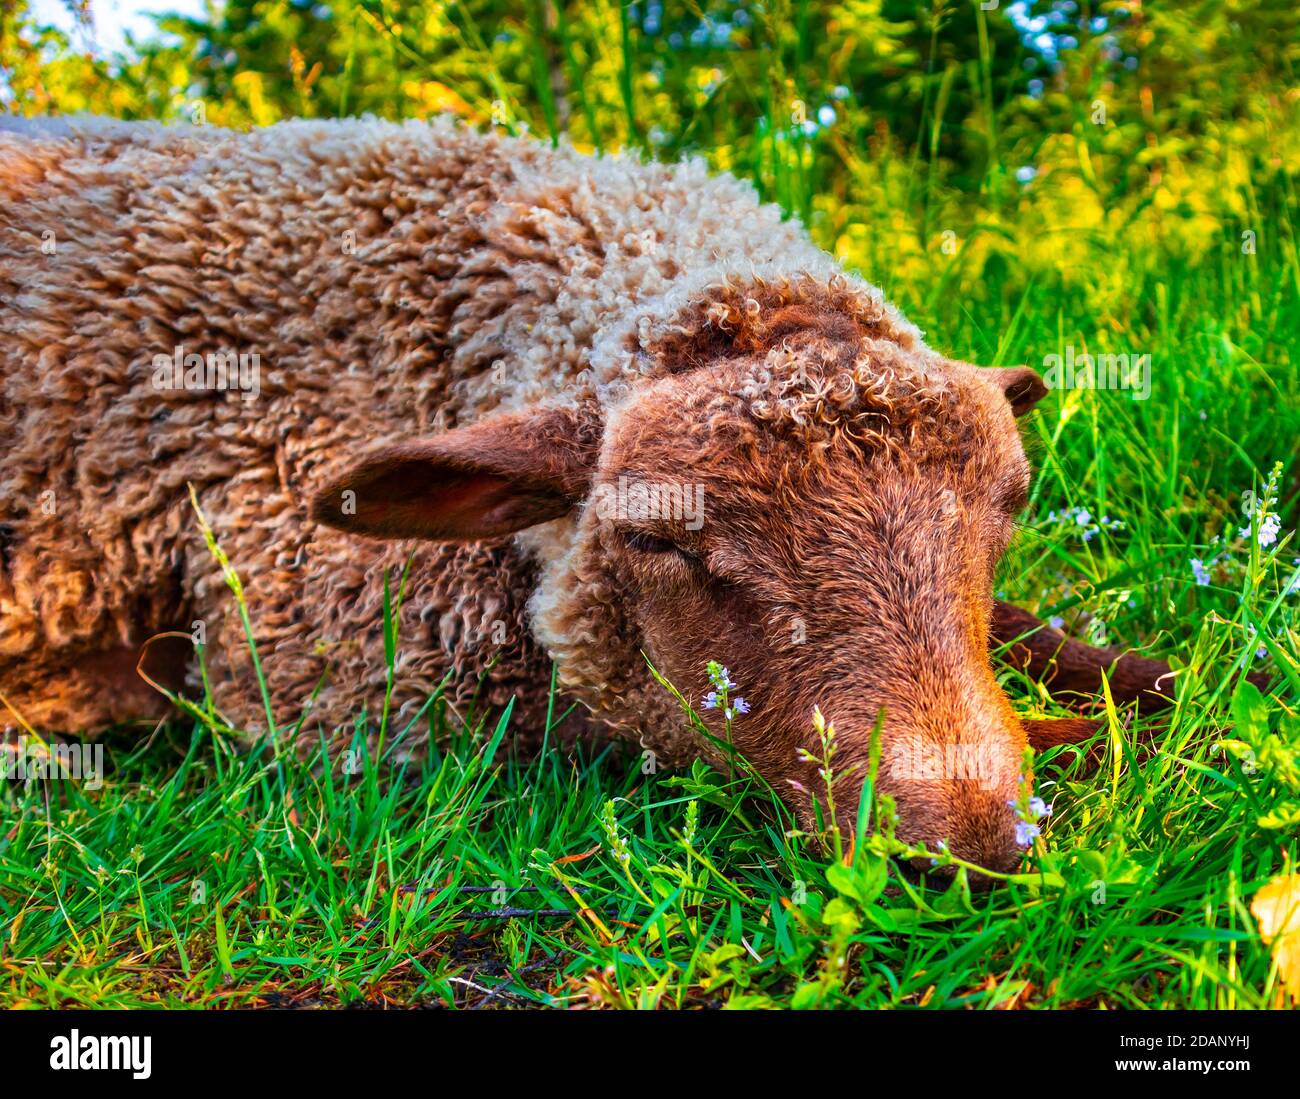 Joli mouton brun posé sur le sol en herbe verte et fleurs. L'animal contrarié mettant la tête sur les jambes, étant triste. Agneau se détendant à l'extérieur par beau temps Banque D'Images